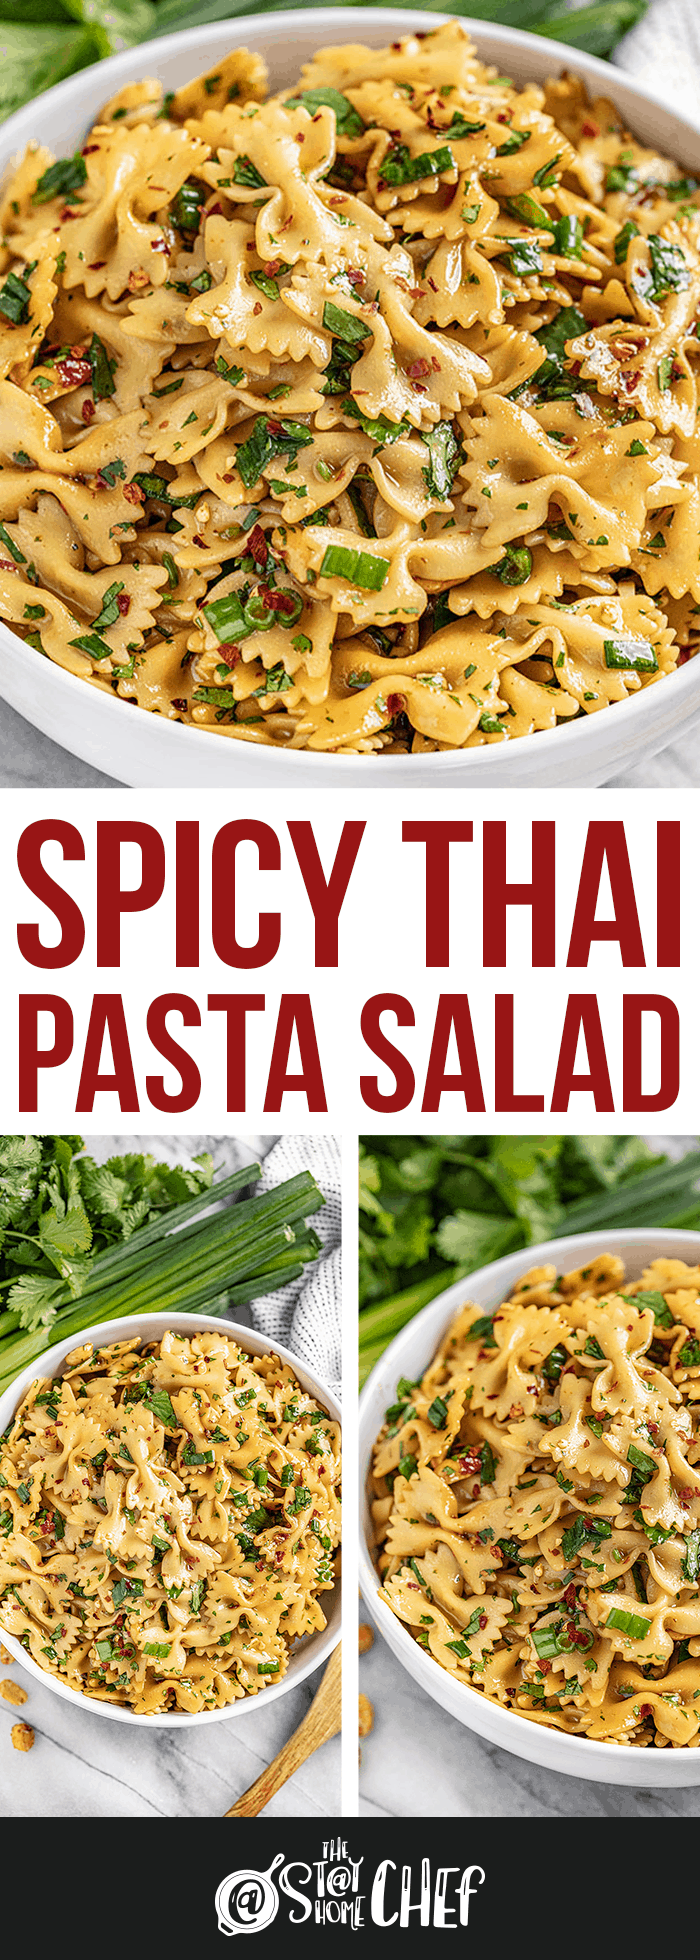 Spicy Thai Pasta Salad